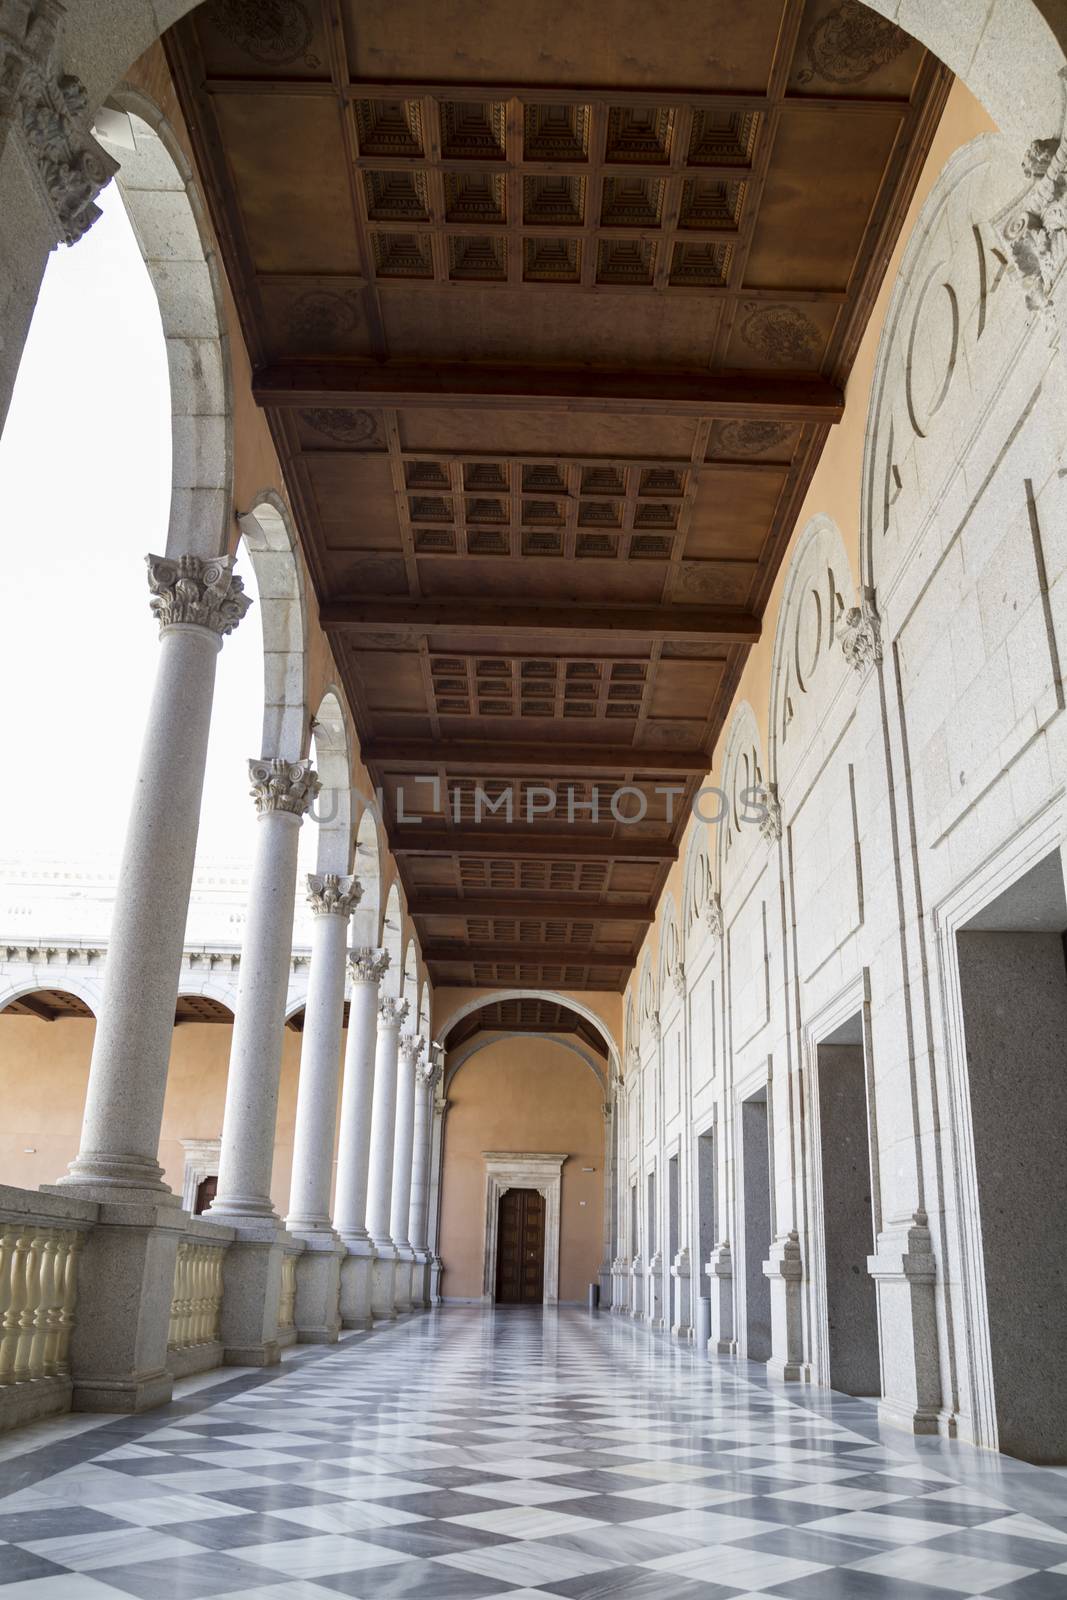 Indoor palace, Alcazar de Toledo, Spain by FernandoCortes